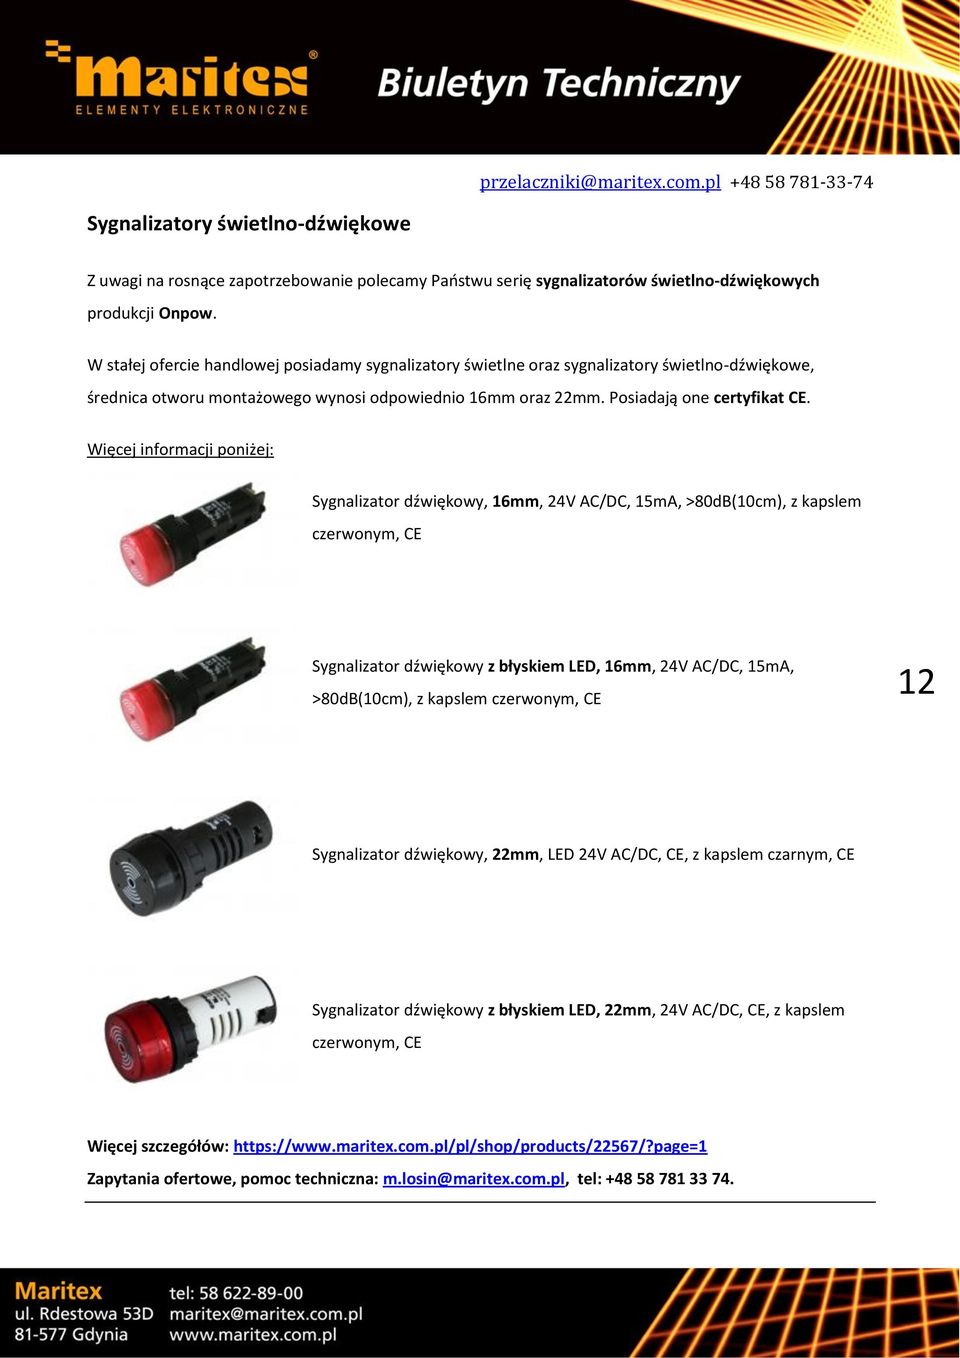 Więcej informacji poniżej: Sygnalizator dźwiękowy, 16mm, 24V AC/DC, 15mA, >80dB(10cm), z kapslem czerwonym, CE Sygnalizator dźwiękowy z błyskiem LED, 16mm, 24V AC/DC, 15mA, >80dB(10cm), z kapslem